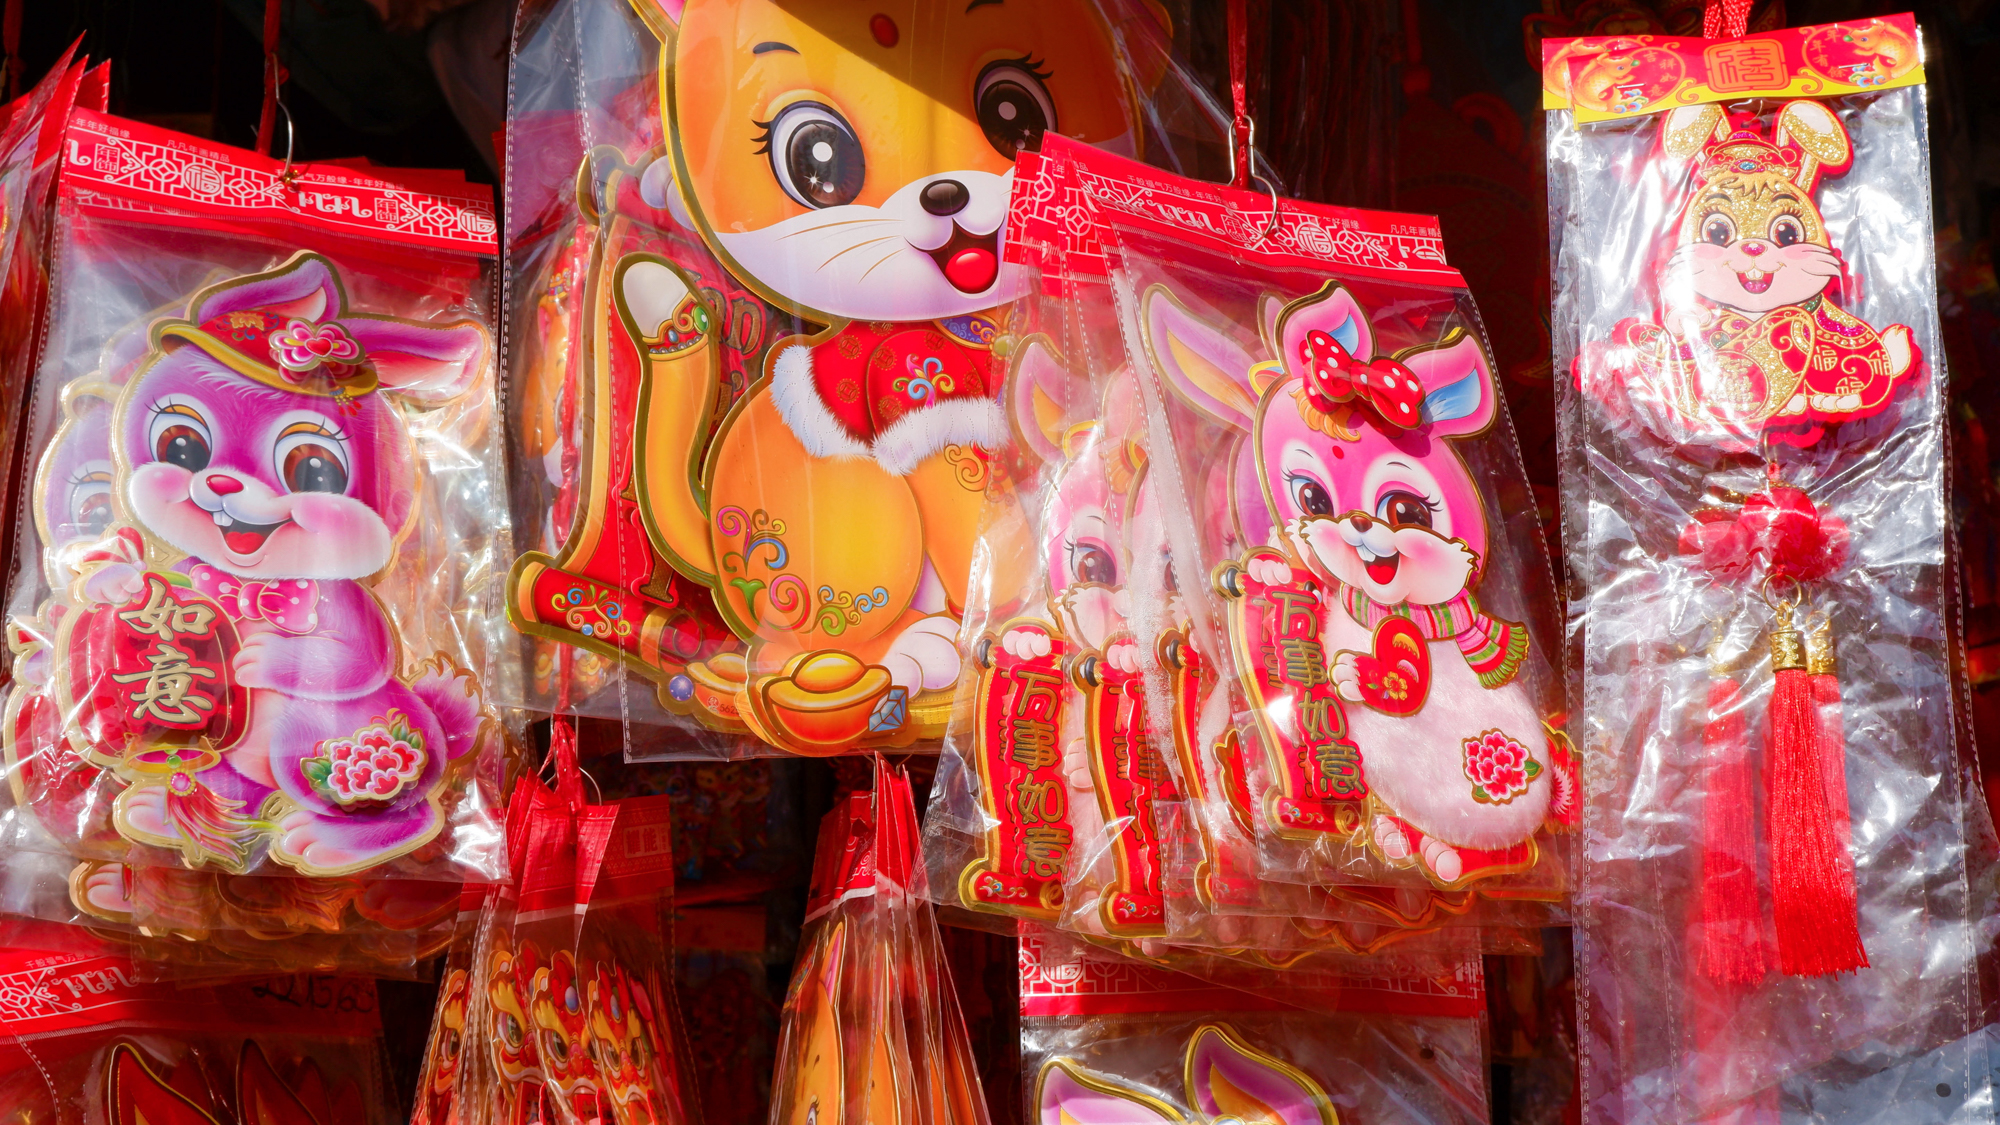 Độc đáo hình ảnh con thỏ trong chợ Tết người Hoa ở TP.HCM  - Ảnh 6.